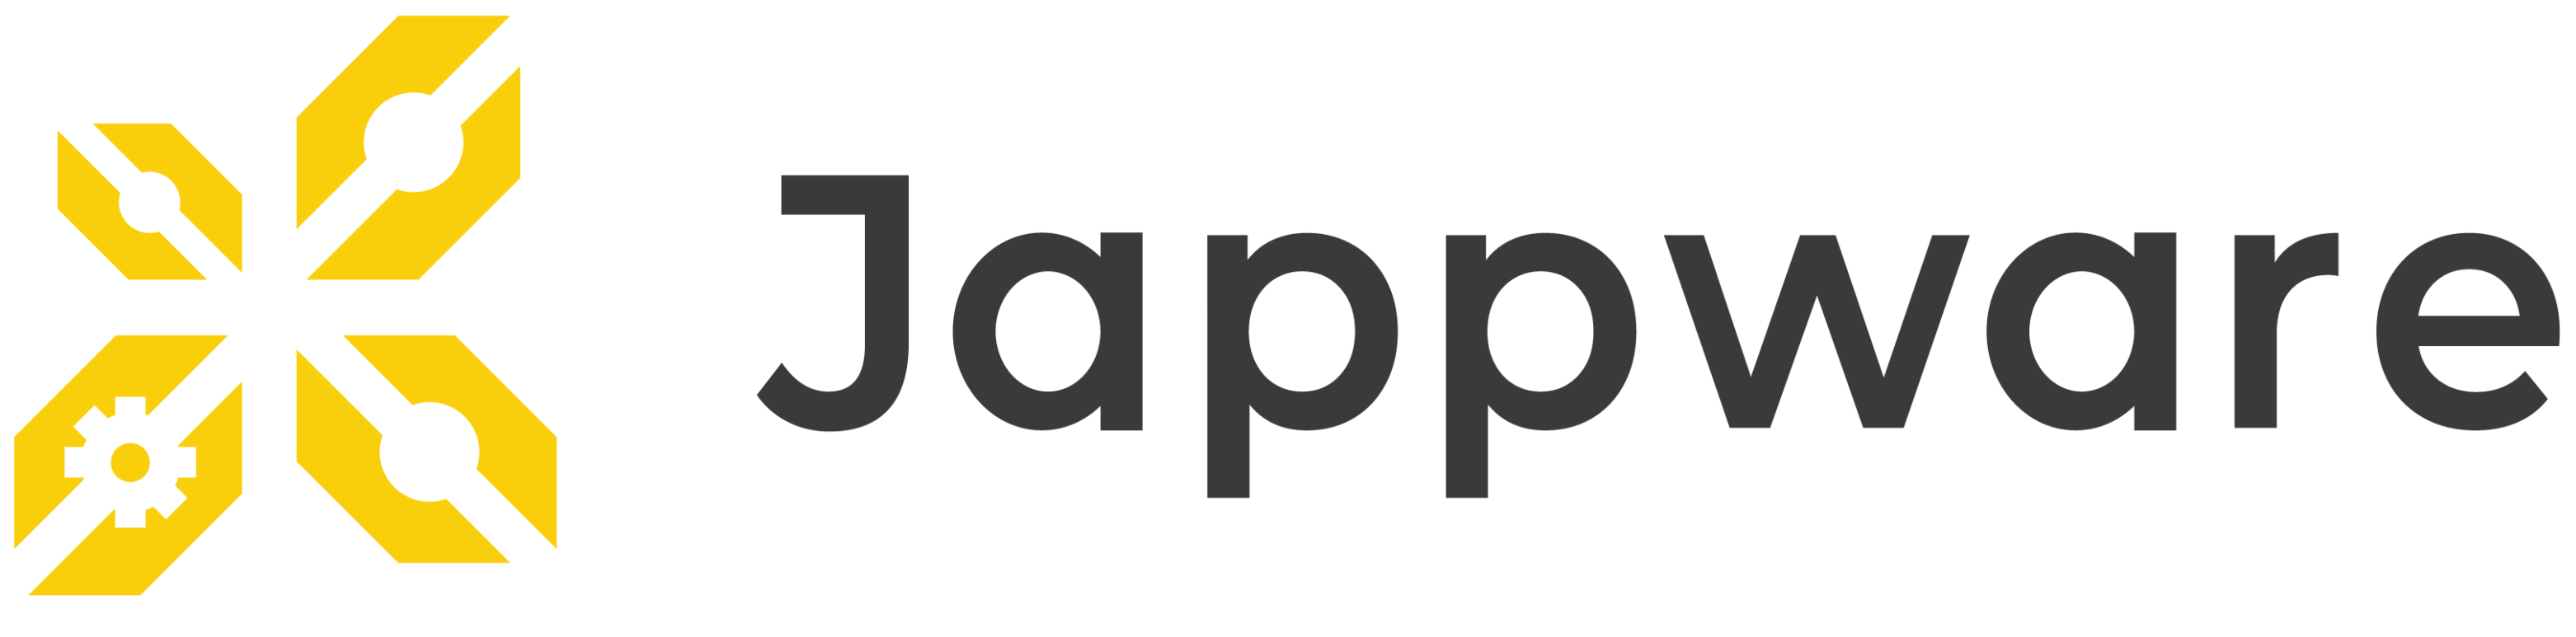 Jappware company logo